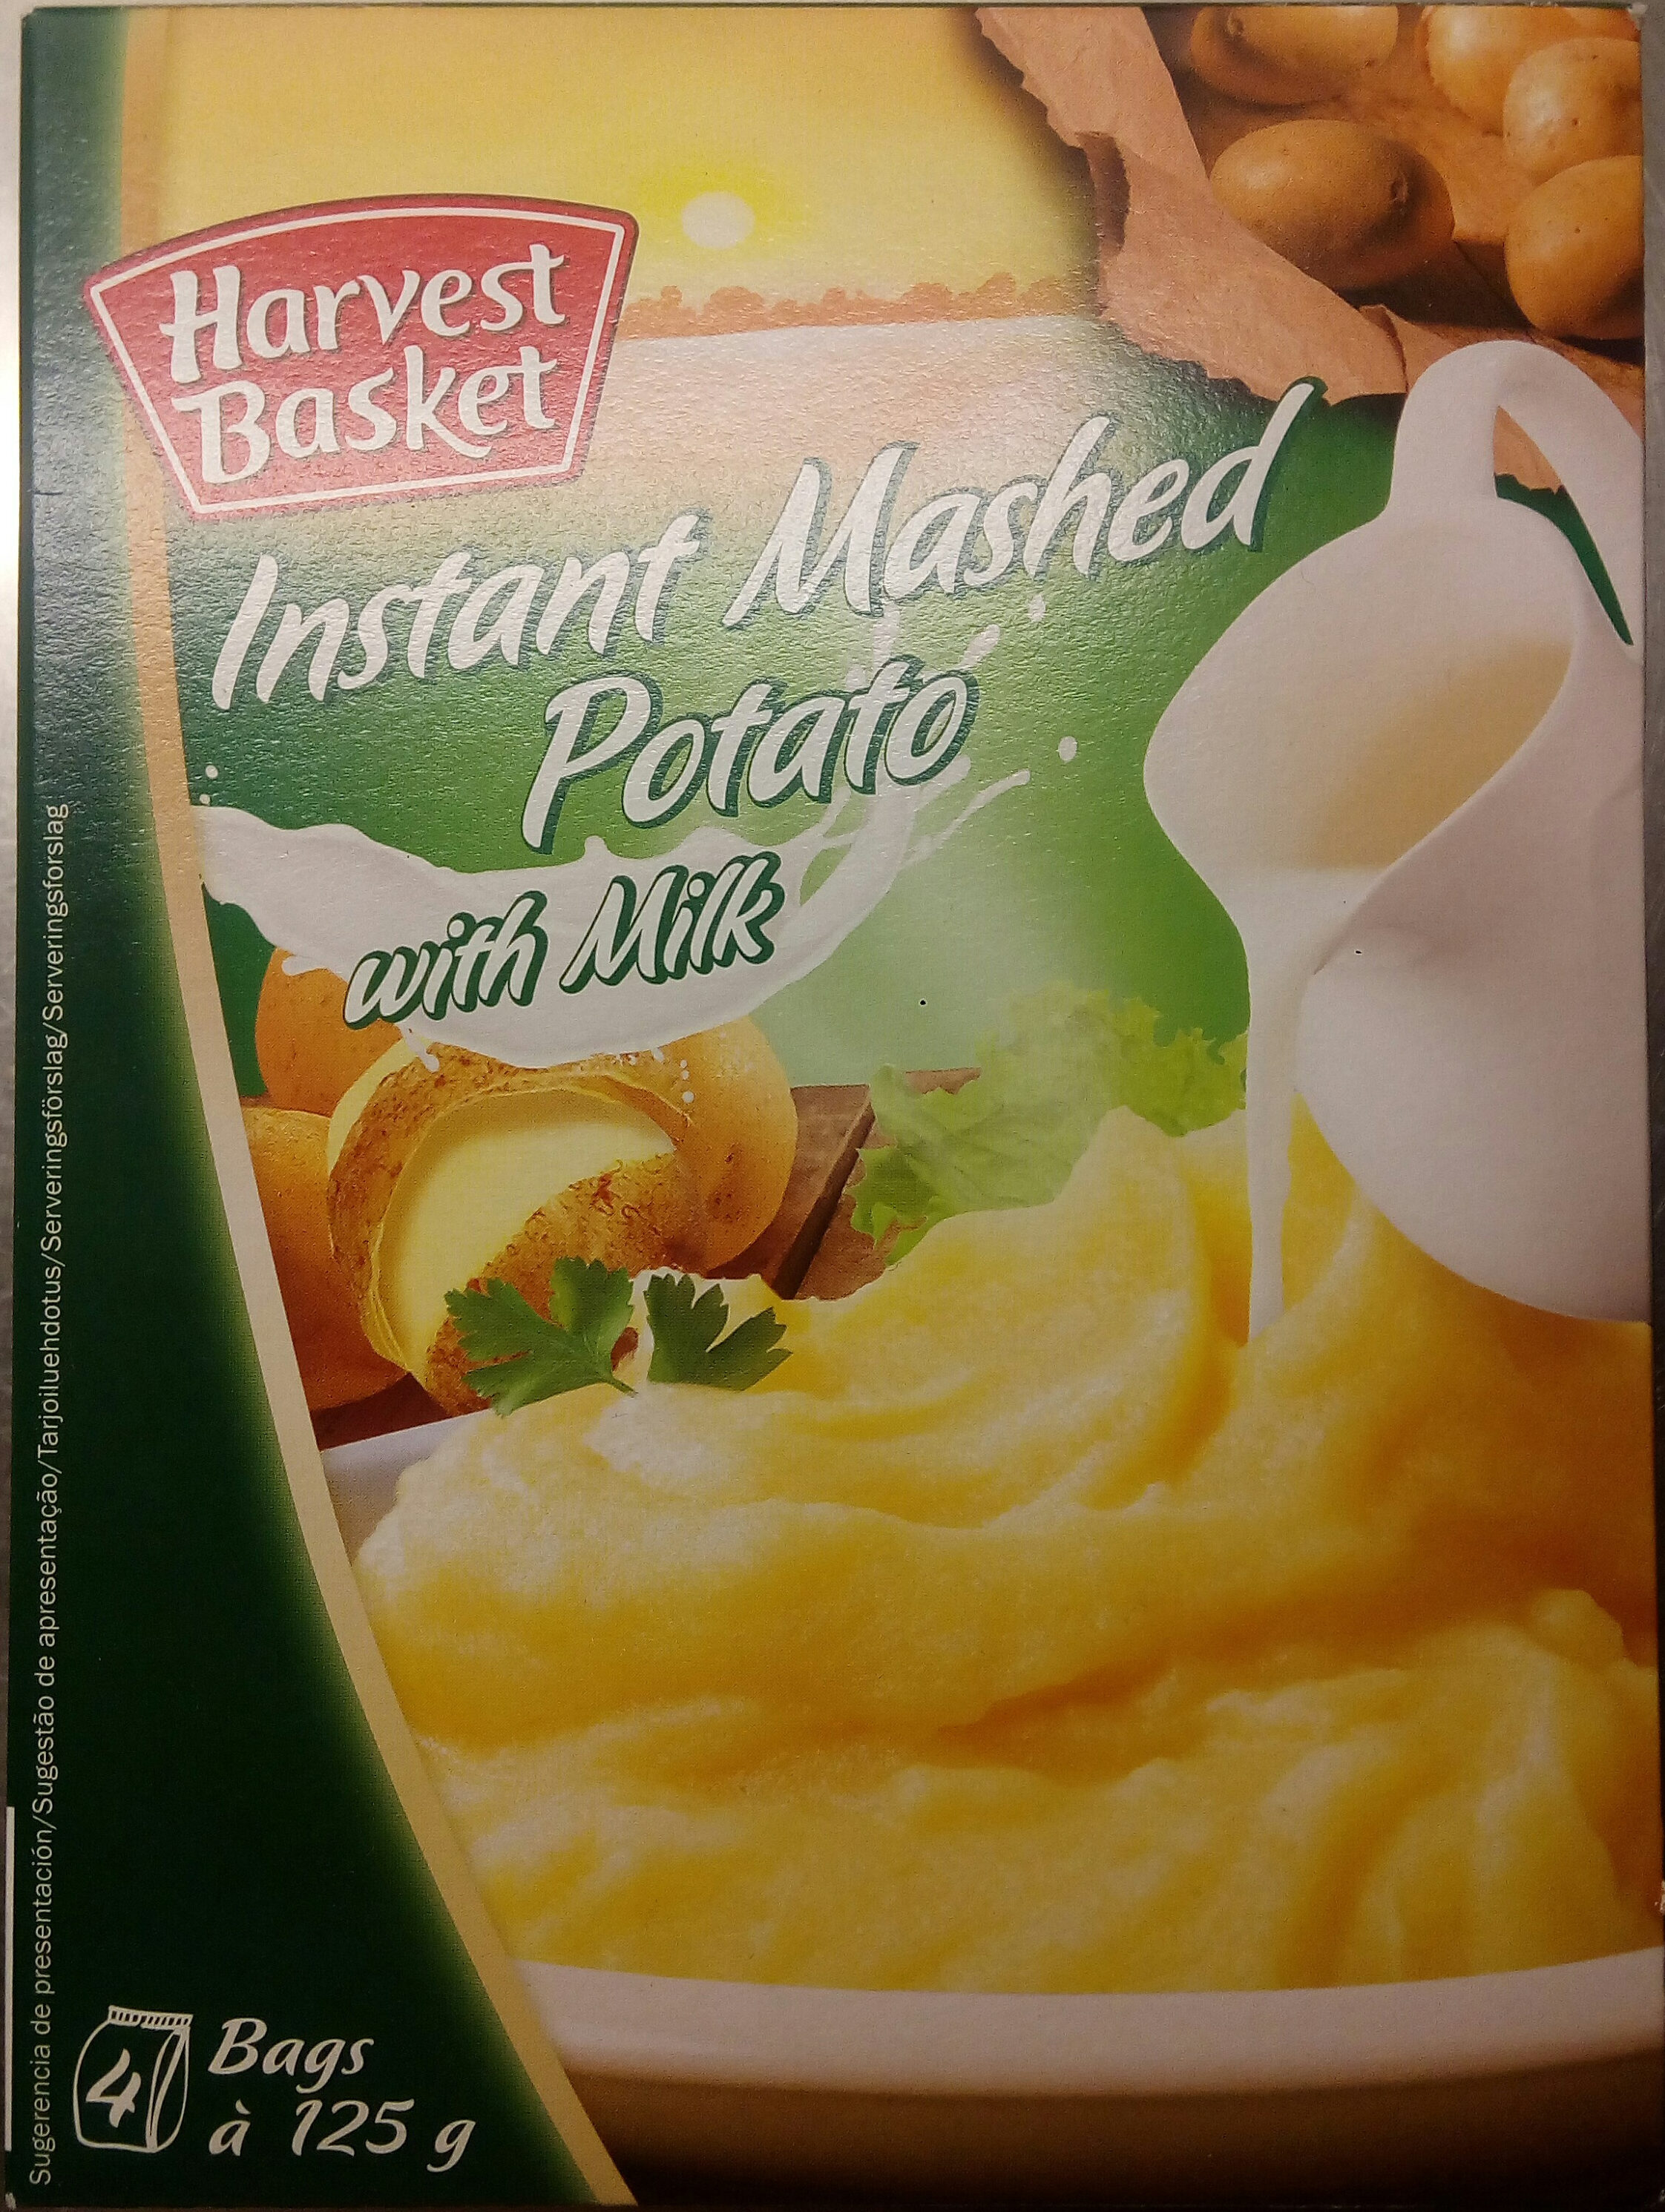 Harvest Basket Instant Mashed Potato with Milk - Produkt - sv